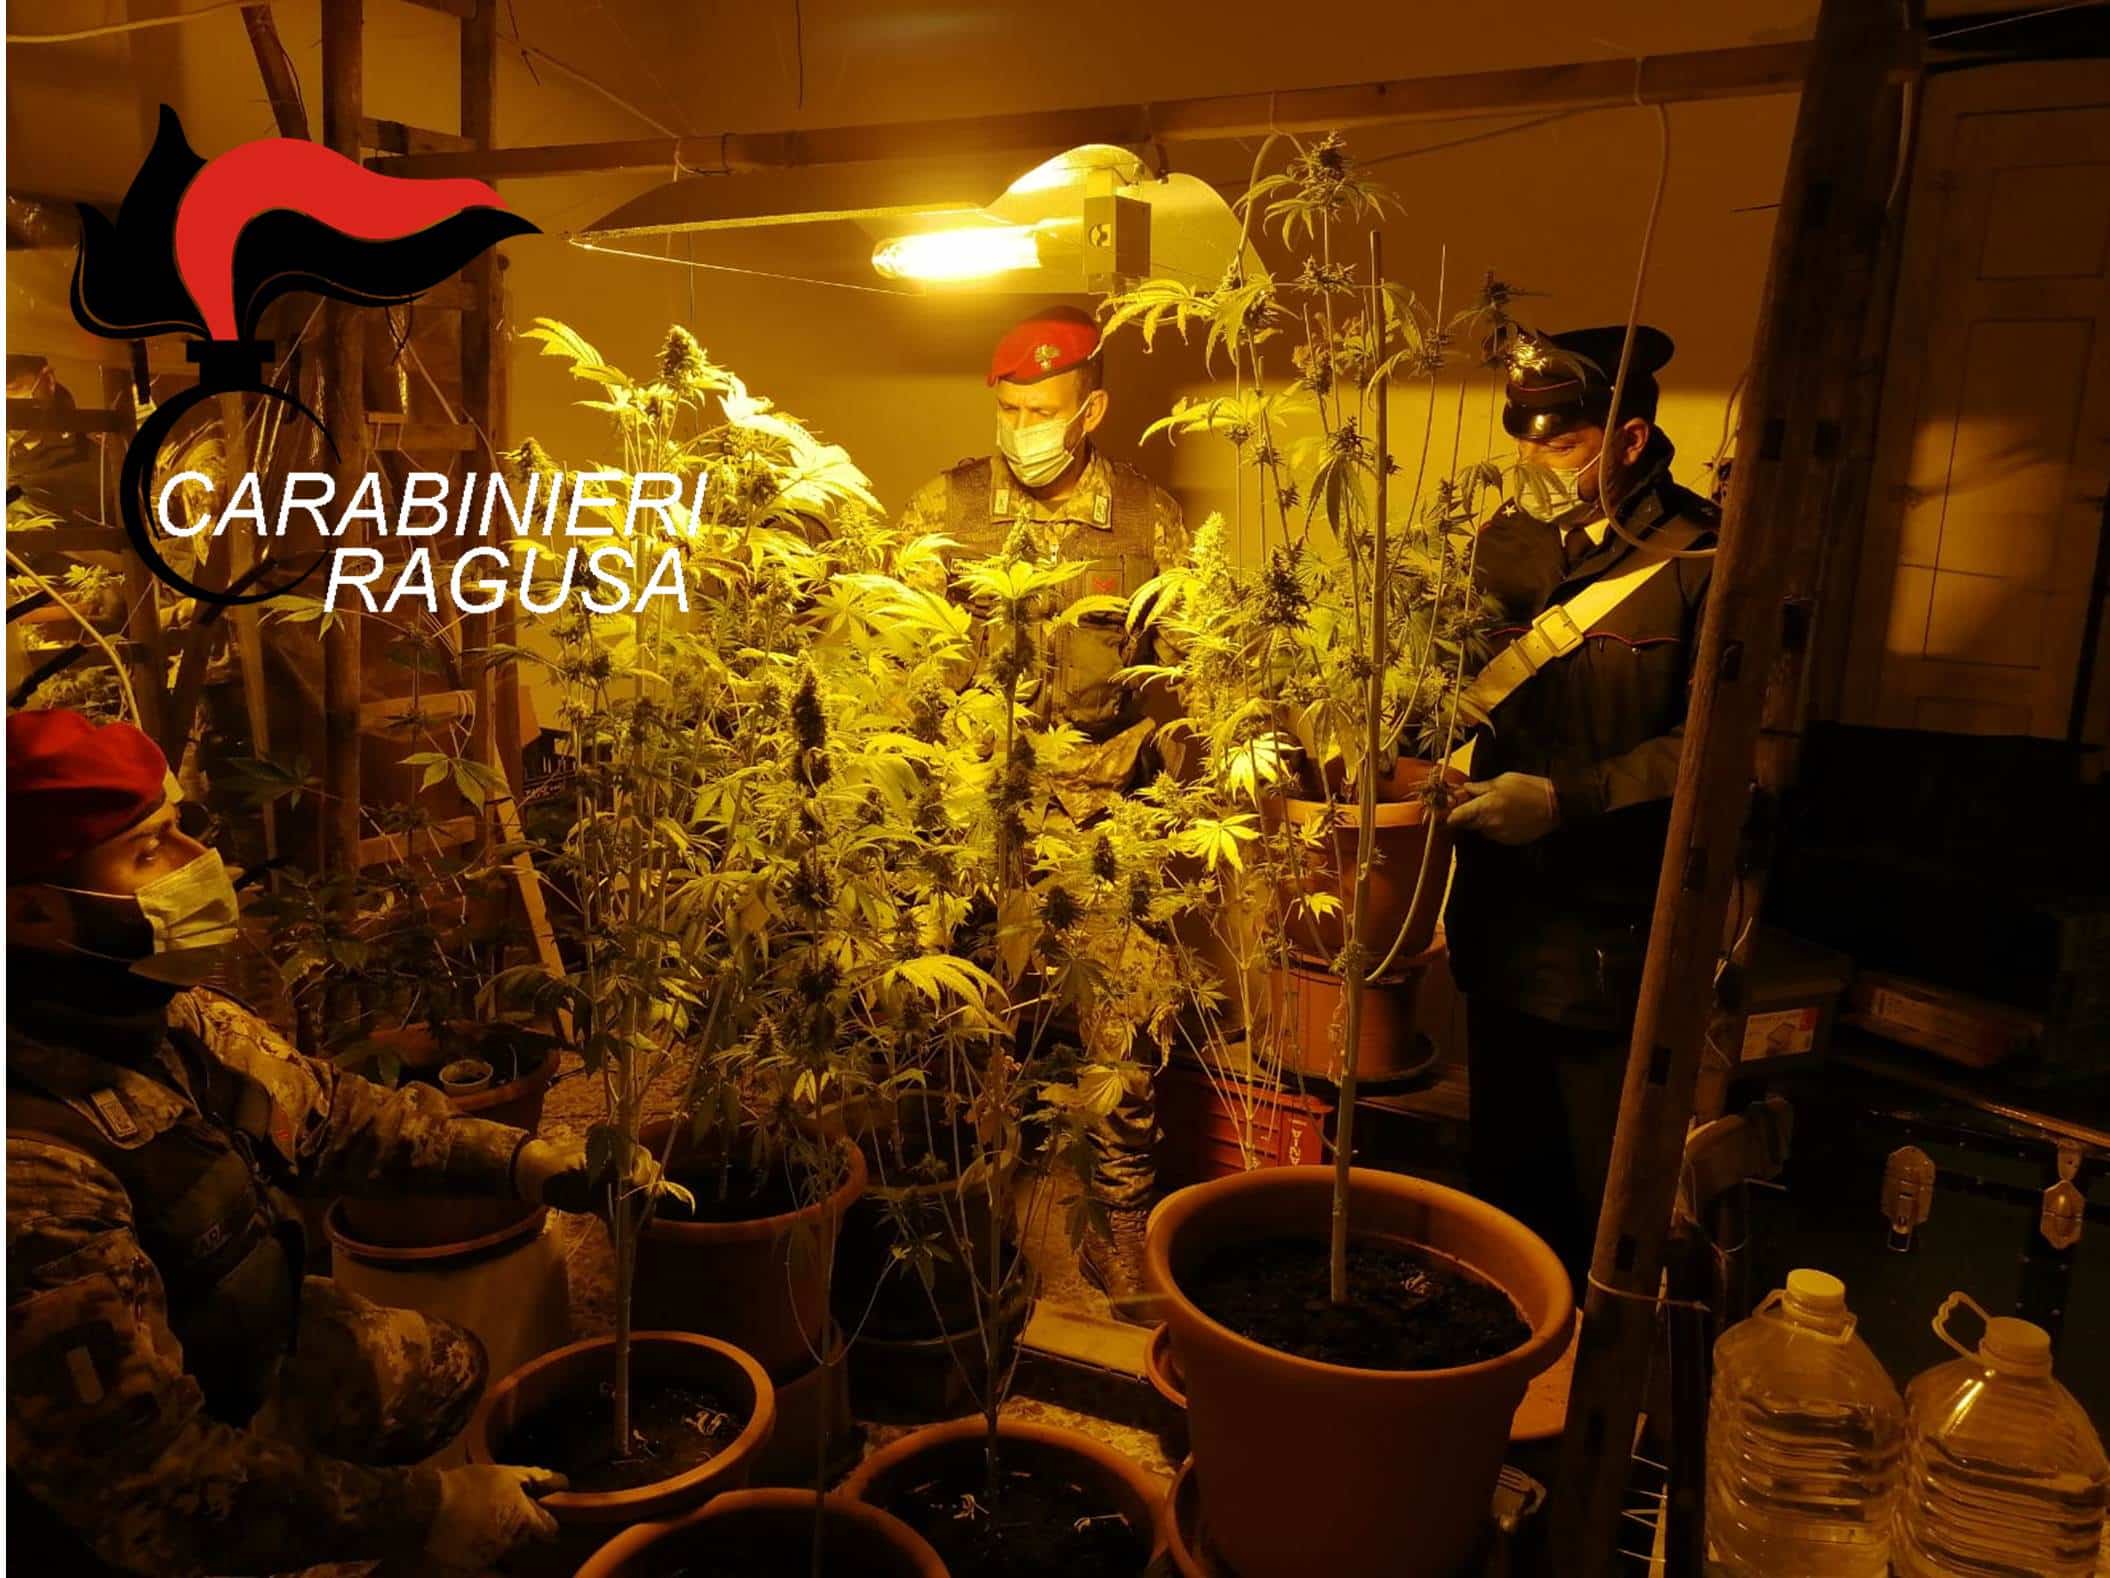 Piantagione di marijuana nascosta in casa: arrestato operaio del Ragusano – VIDEO e FOTO